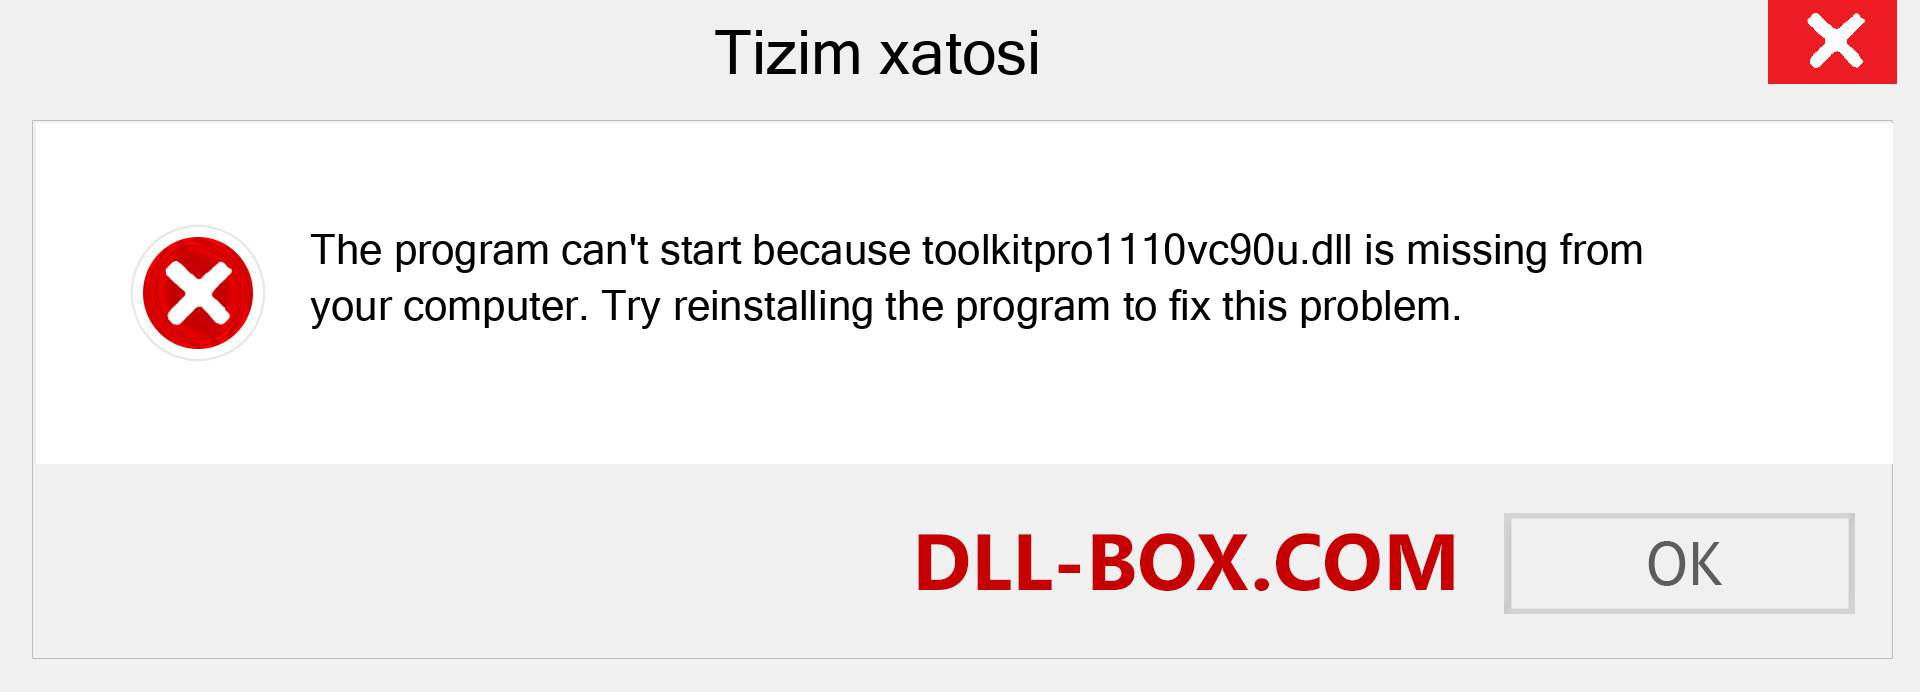 toolkitpro1110vc90u.dll fayli yo'qolganmi?. Windows 7, 8, 10 uchun yuklab olish - Windowsda toolkitpro1110vc90u dll etishmayotgan xatoni tuzating, rasmlar, rasmlar